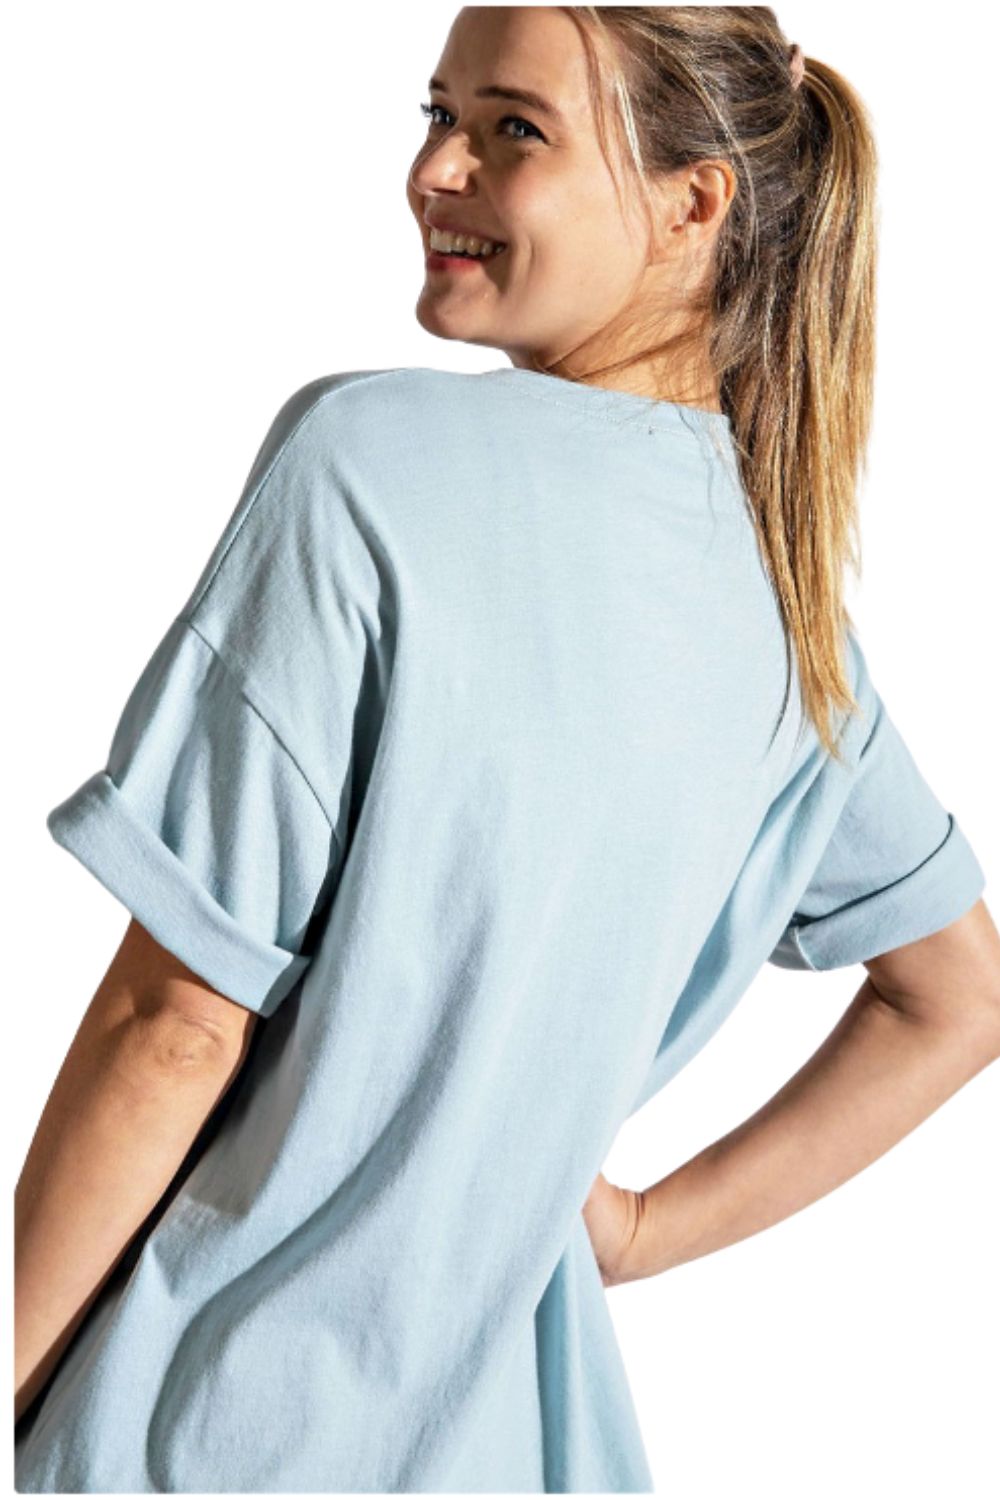 Rae Mode Womens Animal Print V-Neck Slit Side Short Sleeve Pockets